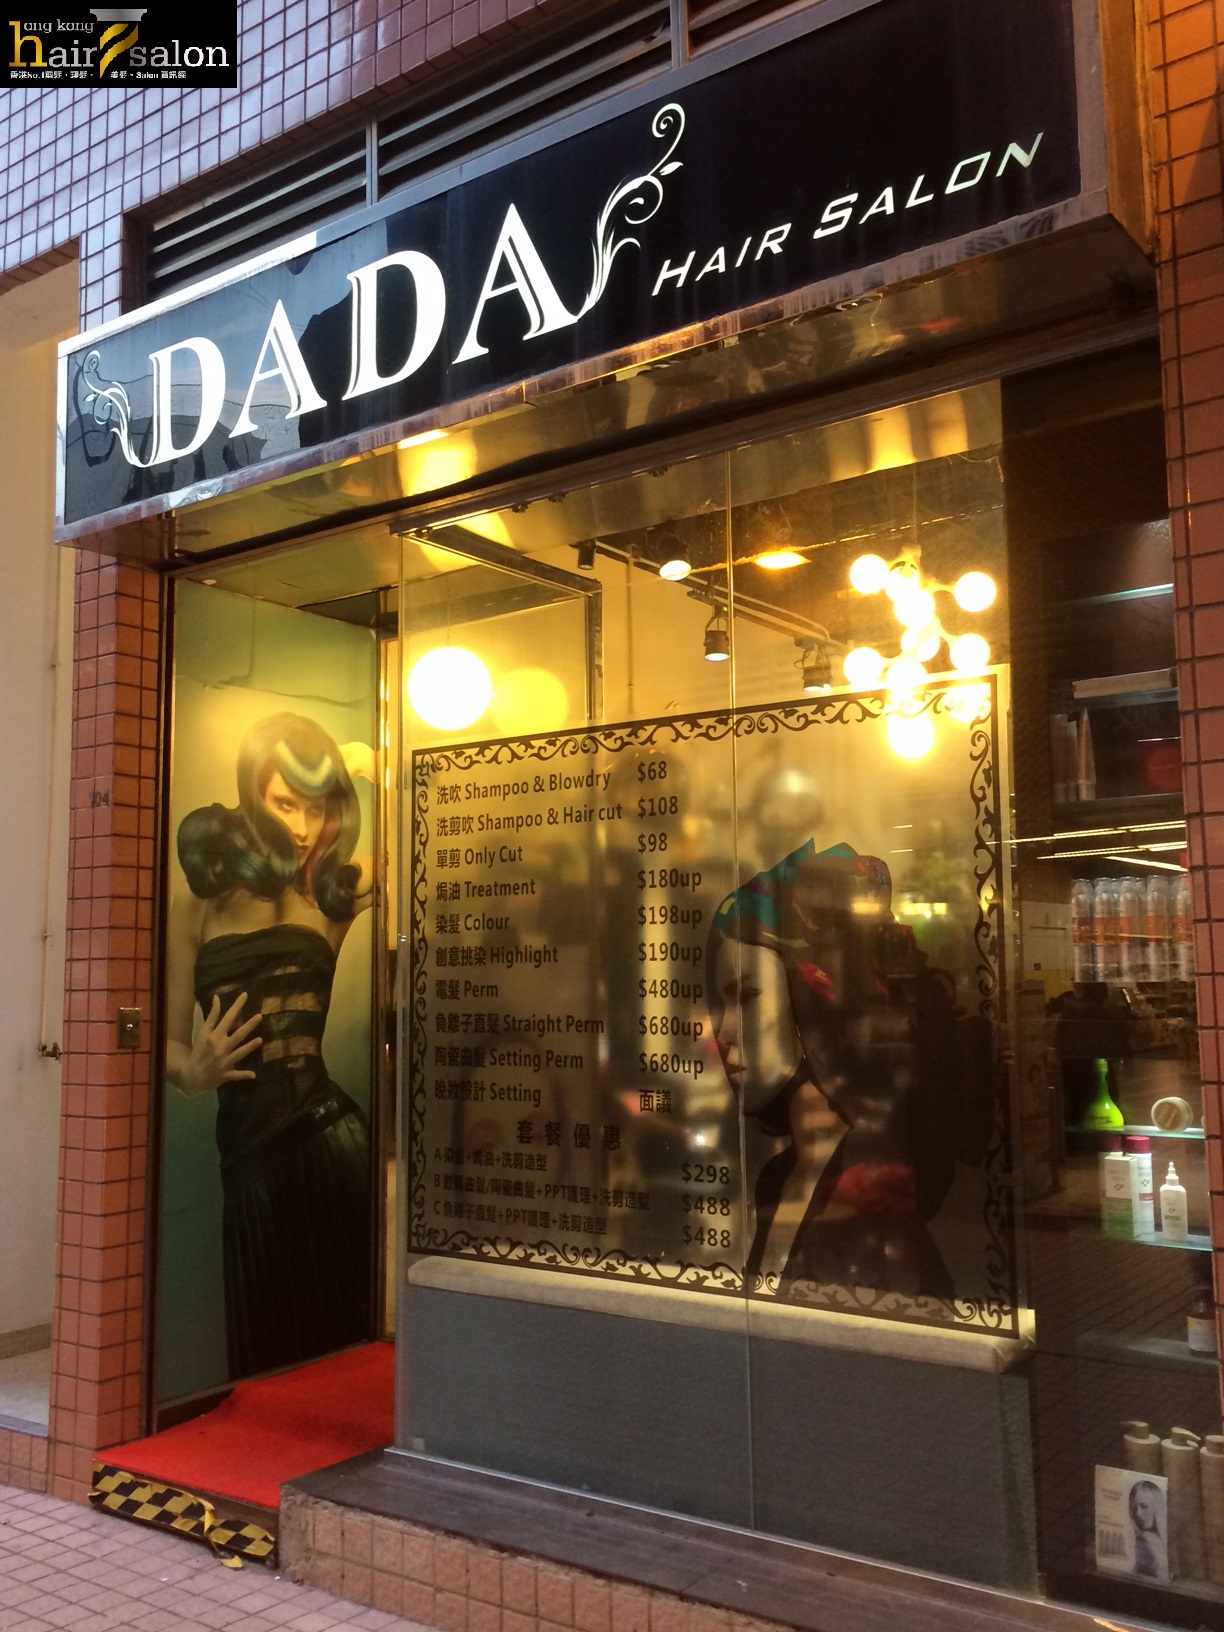 Haircut: DaDa Hair Salon